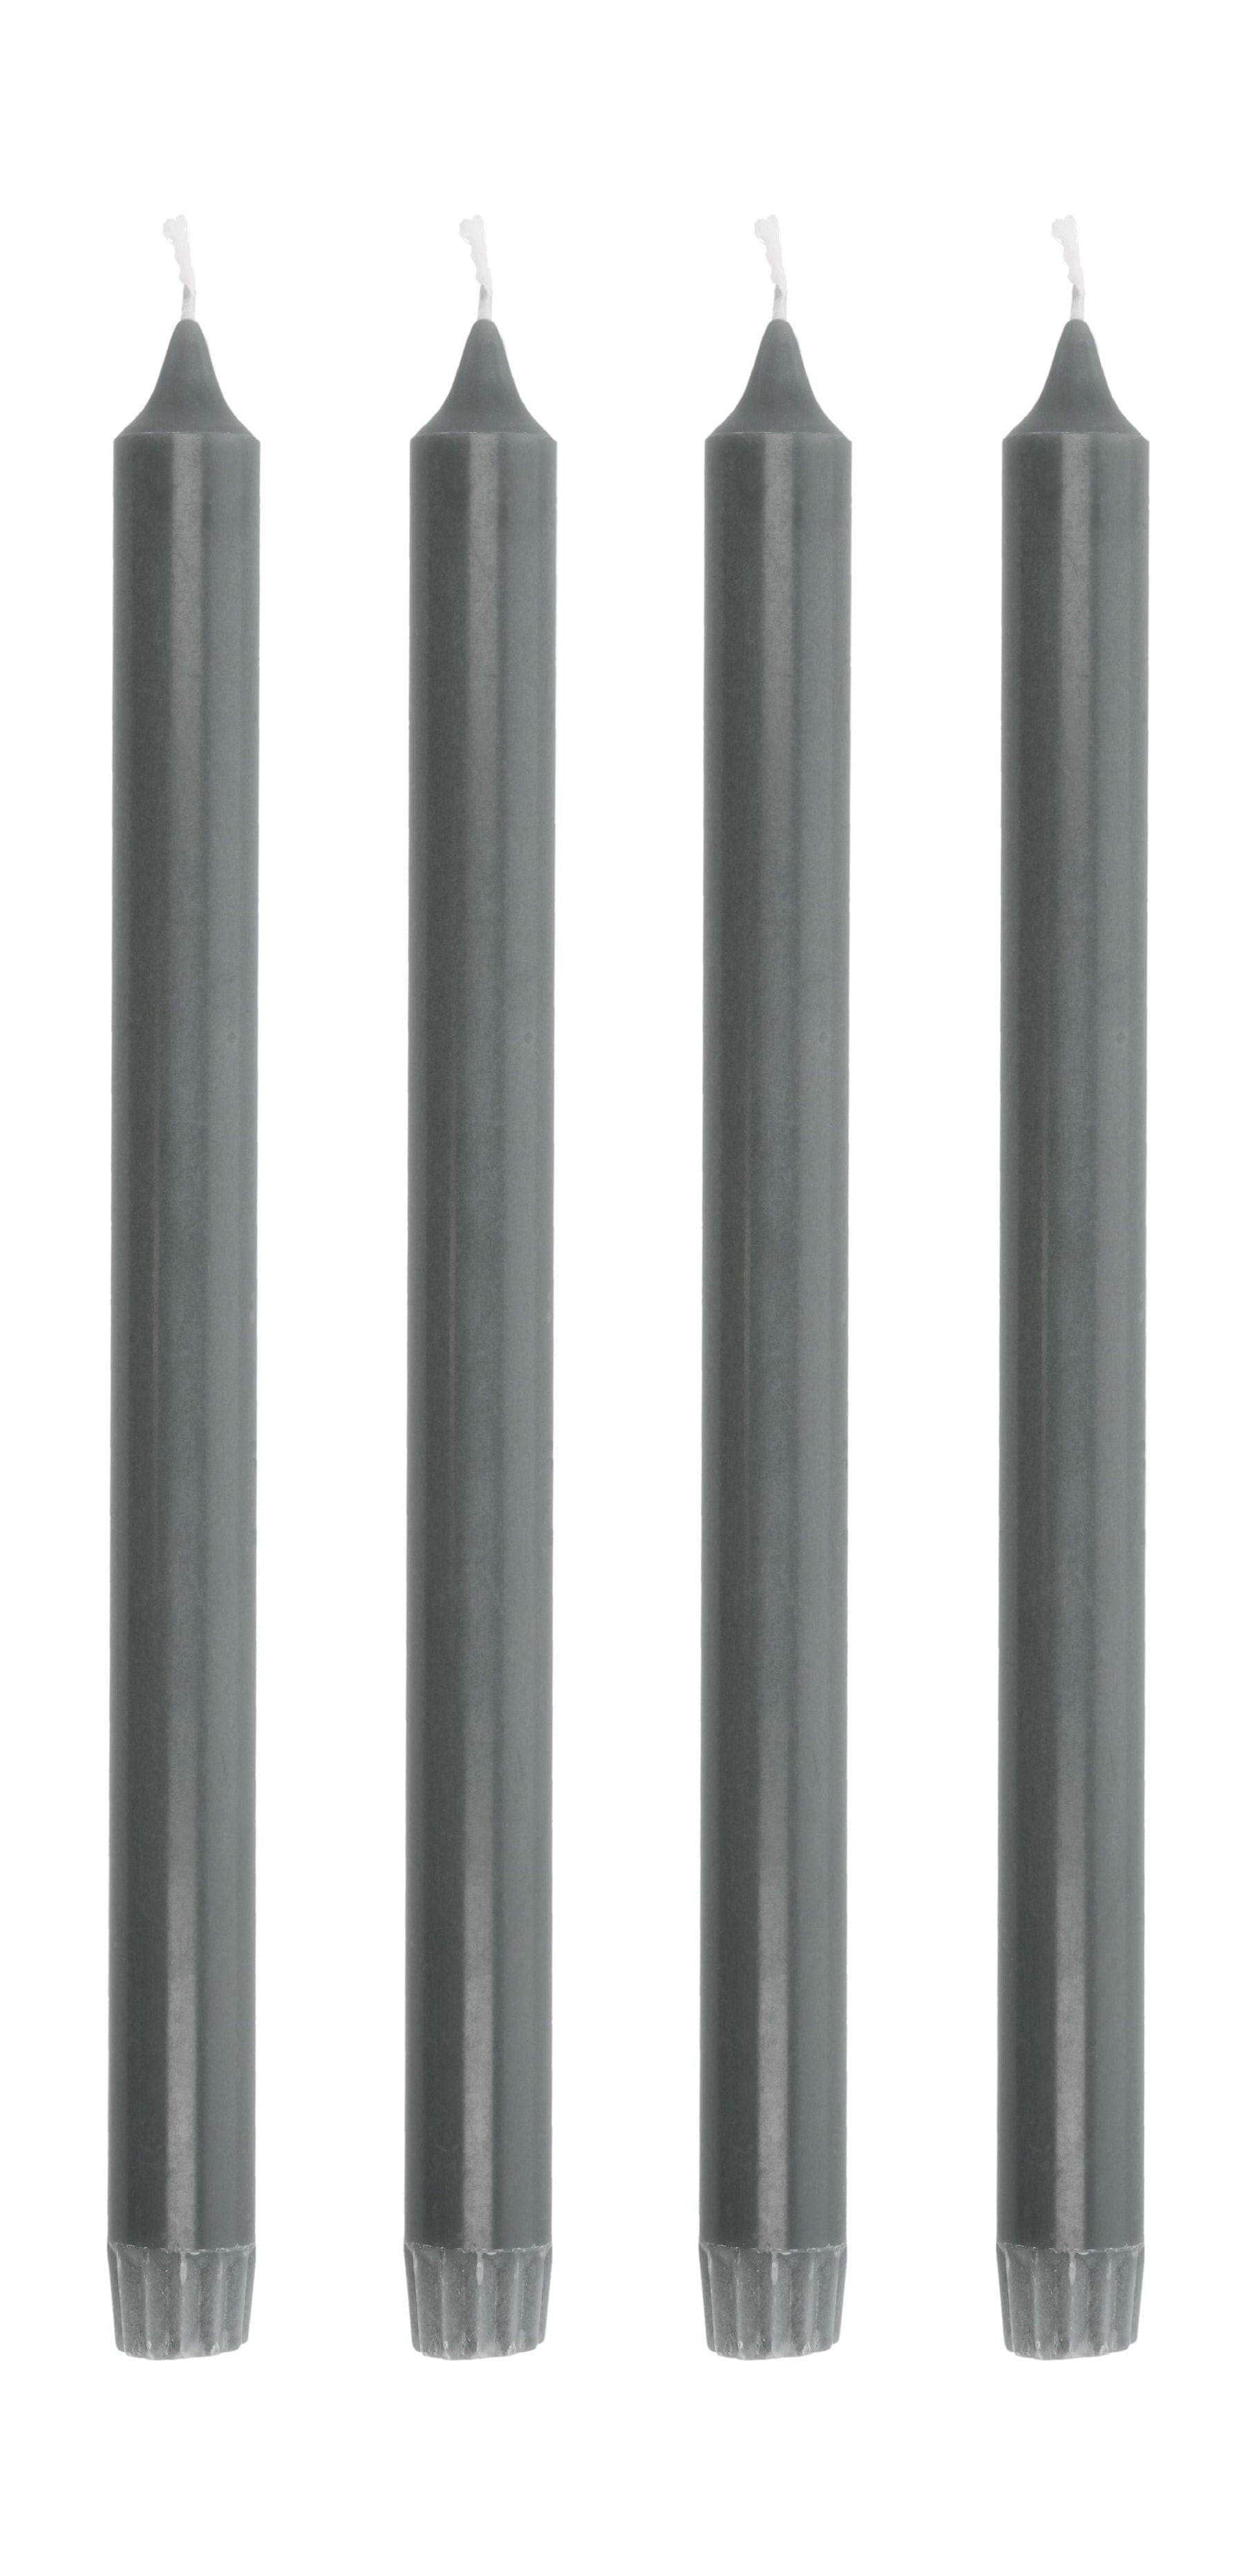 Villa Collection AIA Stick Candle Juego de 4 Øx H 2,2x30, gris oscuro